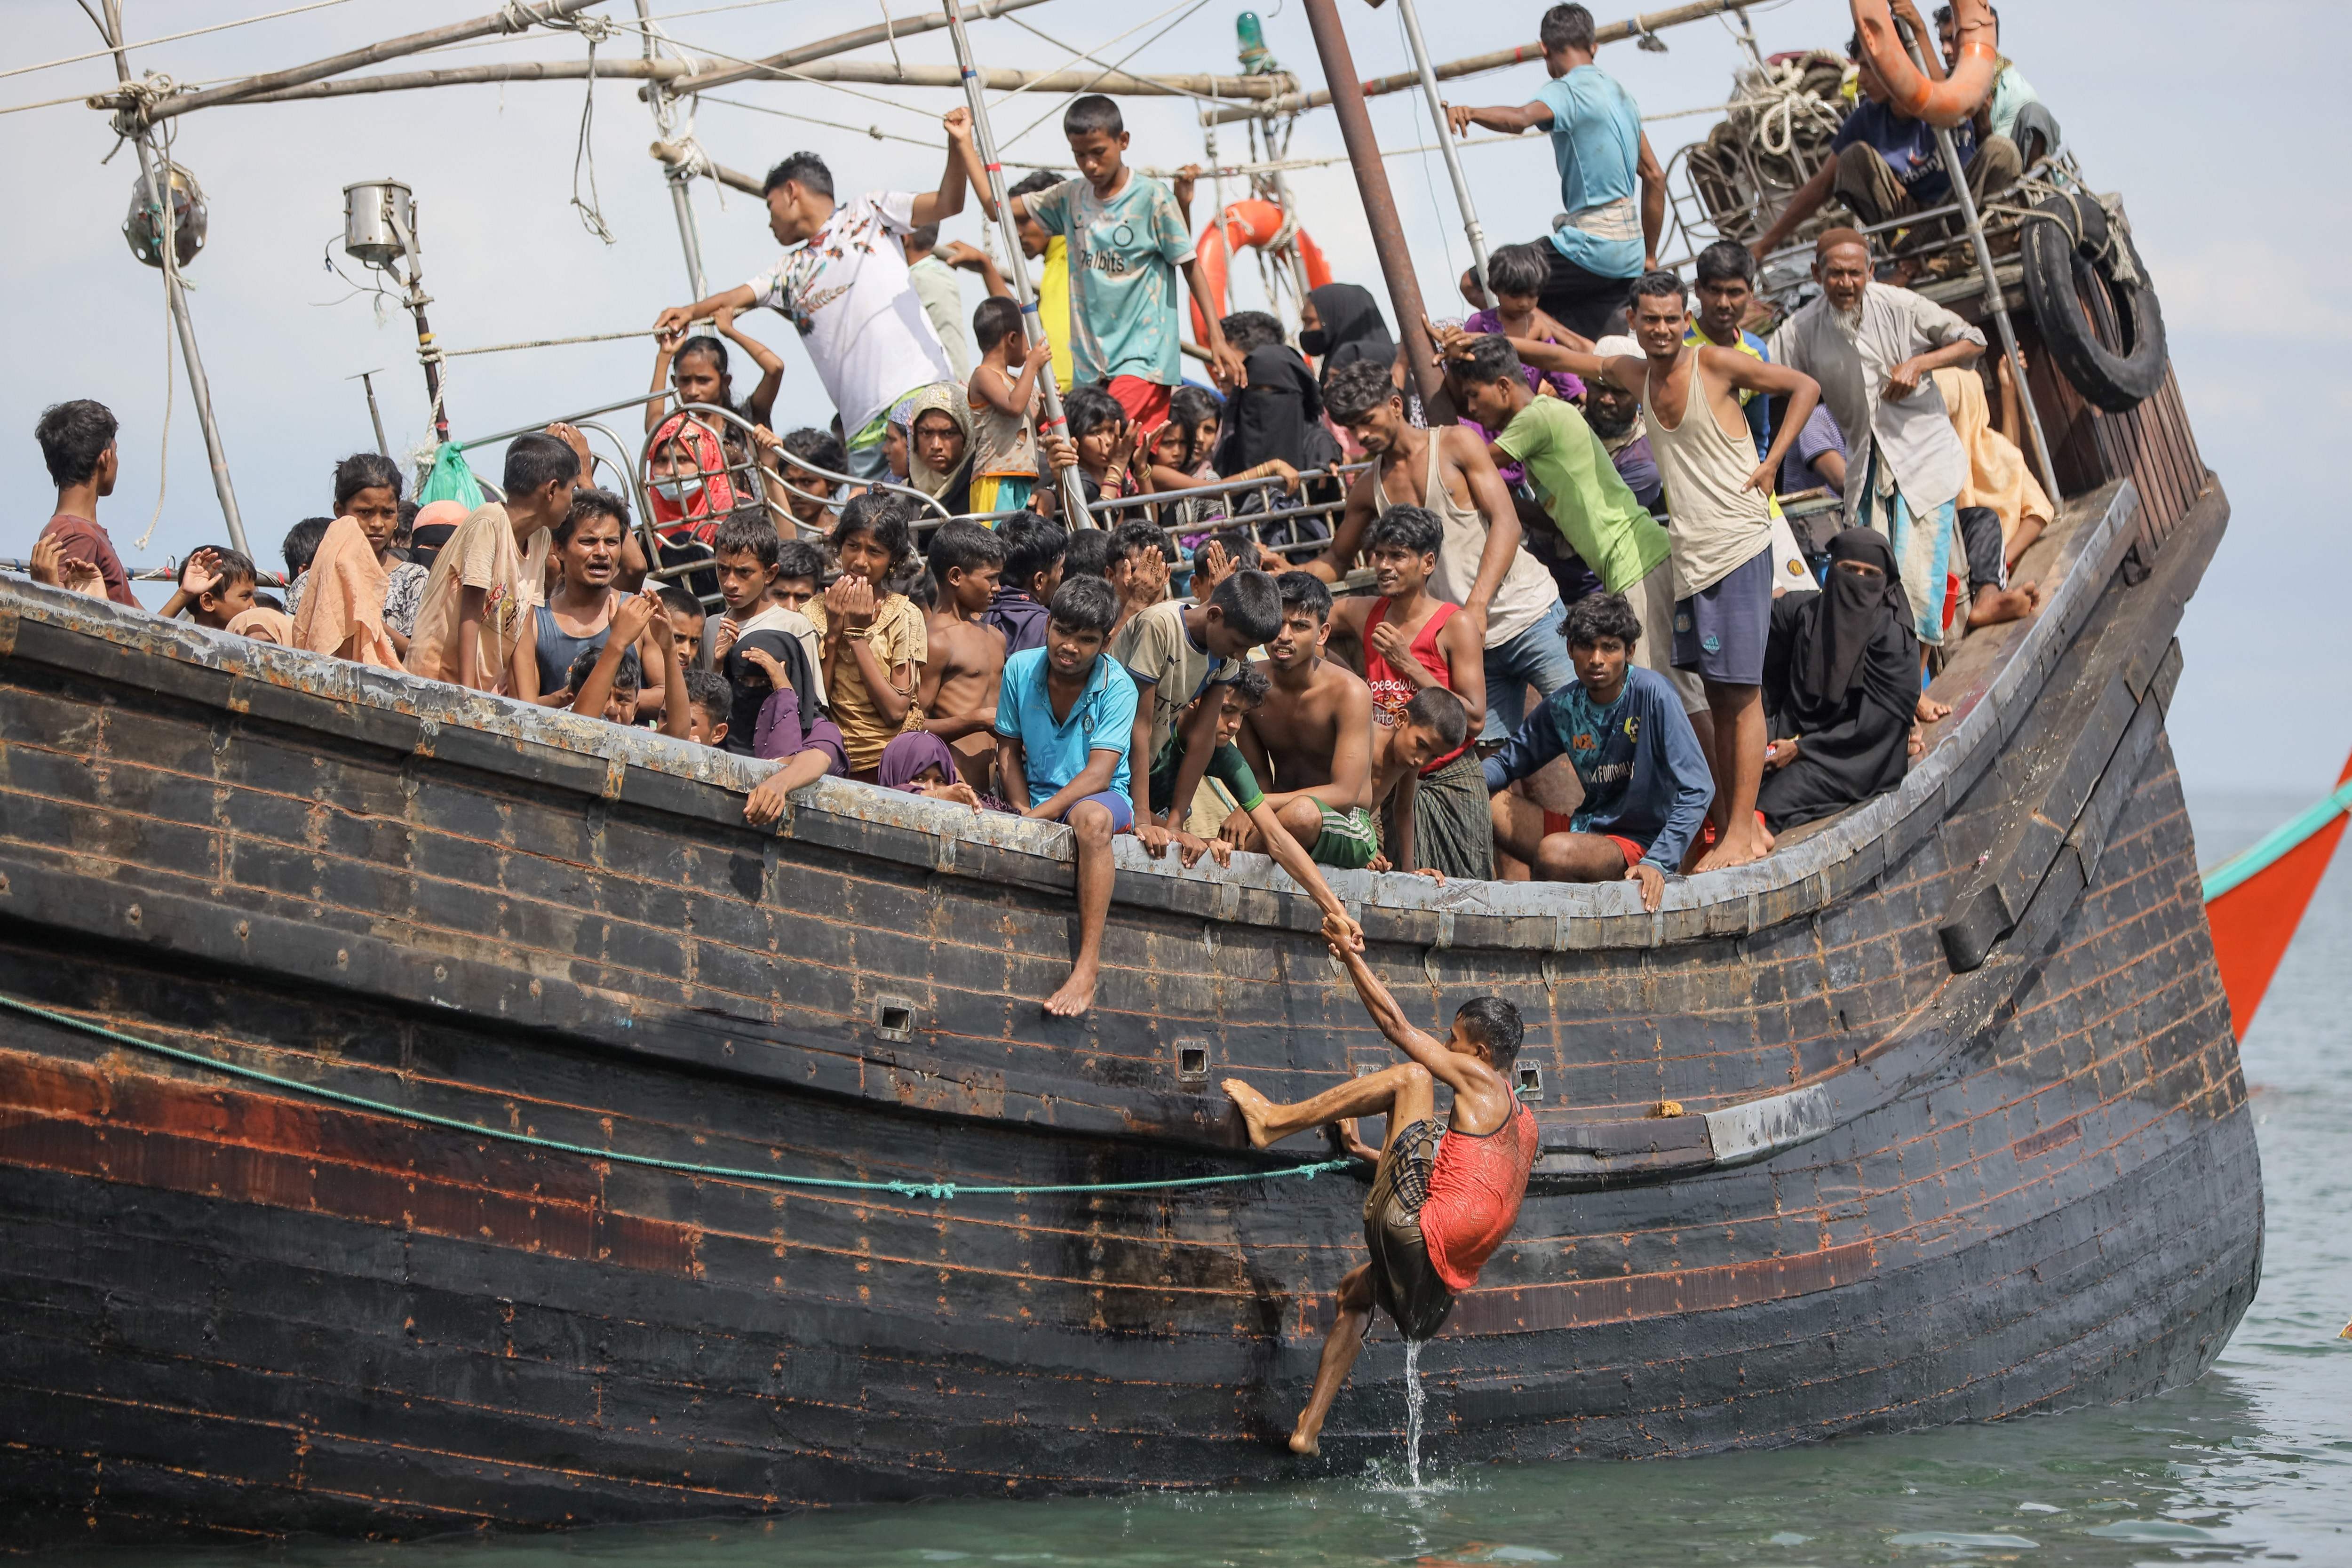 지난해 11월 미얀마의 소수민족 로힝야족 난민들이 목선을 타고 인도네시아 해변에 도착하고 있다. 미얀마 인구 70%를 차지하는 불교도 버마족과 달리 이들은 무슬림이다. 아웅산 수치 국가고문도 2017년 군부의 로힝야족 학살을 방관했다는 이유로 국제사회 비판을 받았다. 